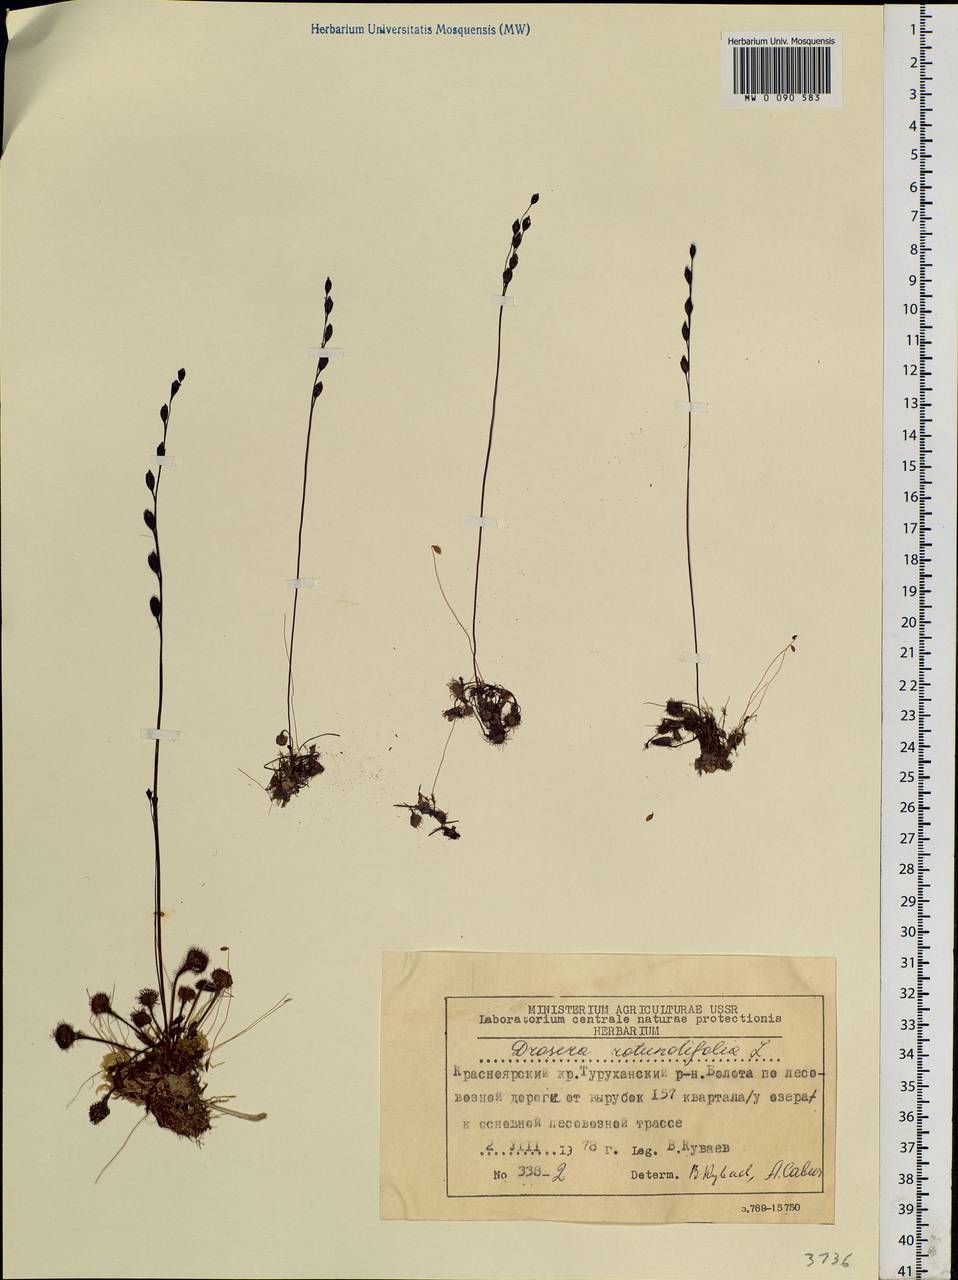 Drosera rotundifolia L., Siberia, Central Siberia (S3) (Russia)